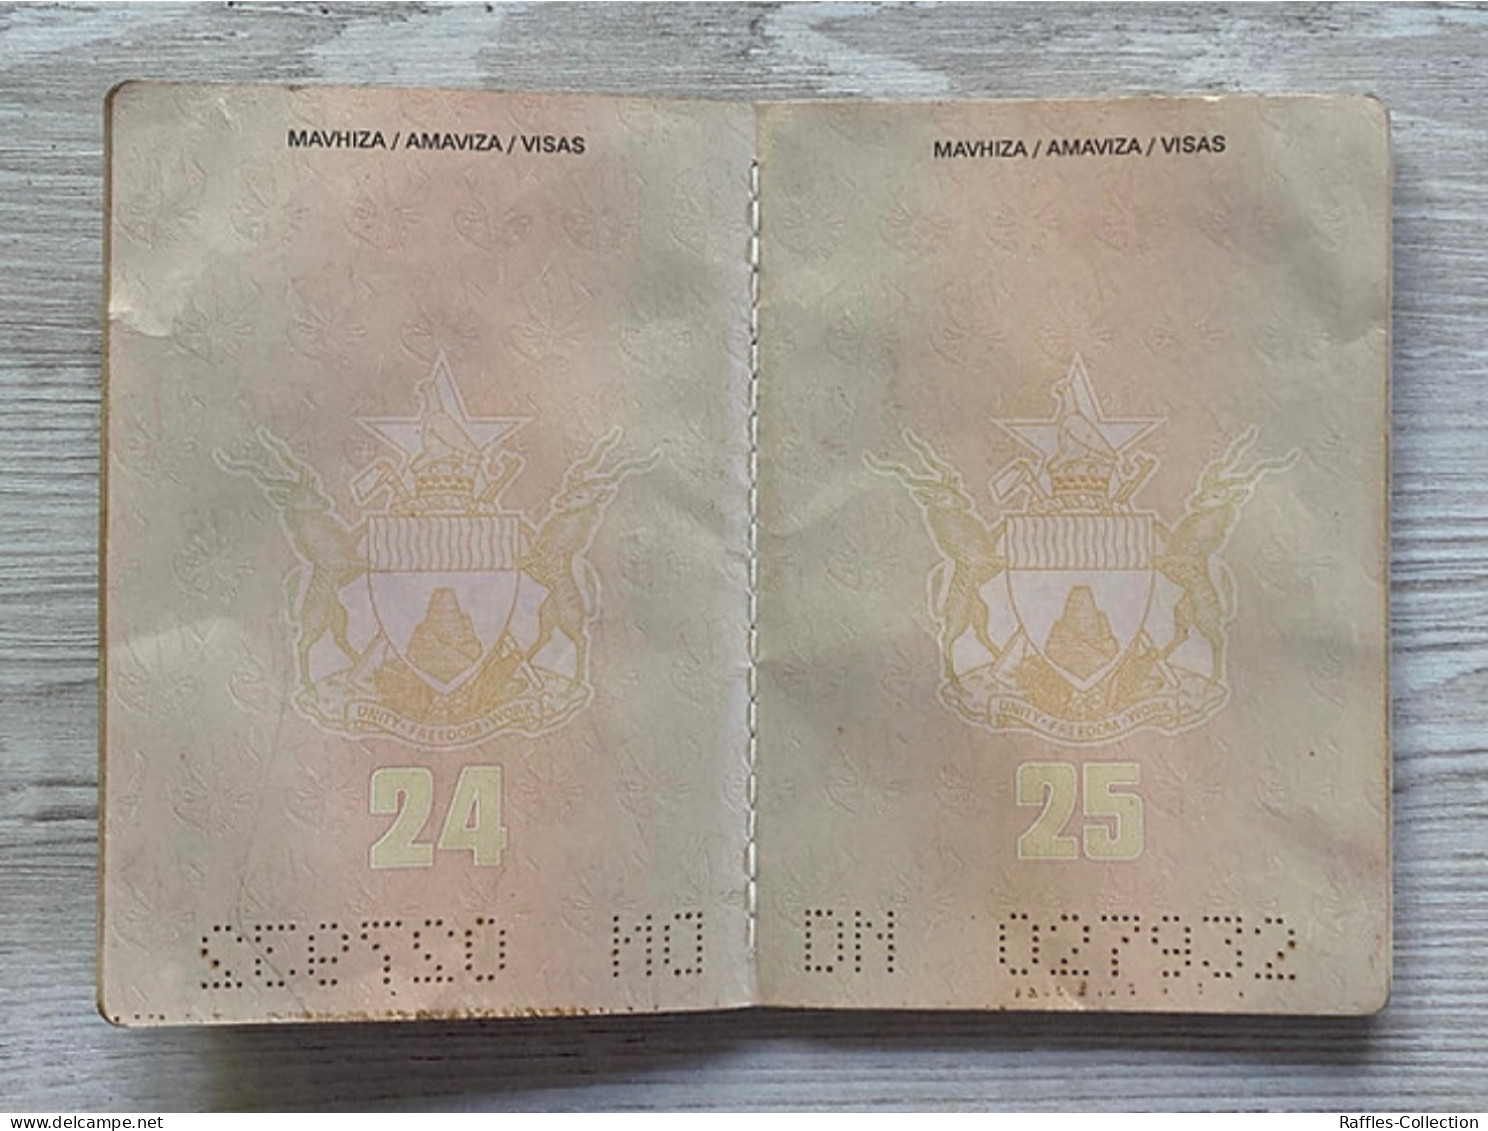 Zimbabwe passport passeport reisepass pasaporte passaporto